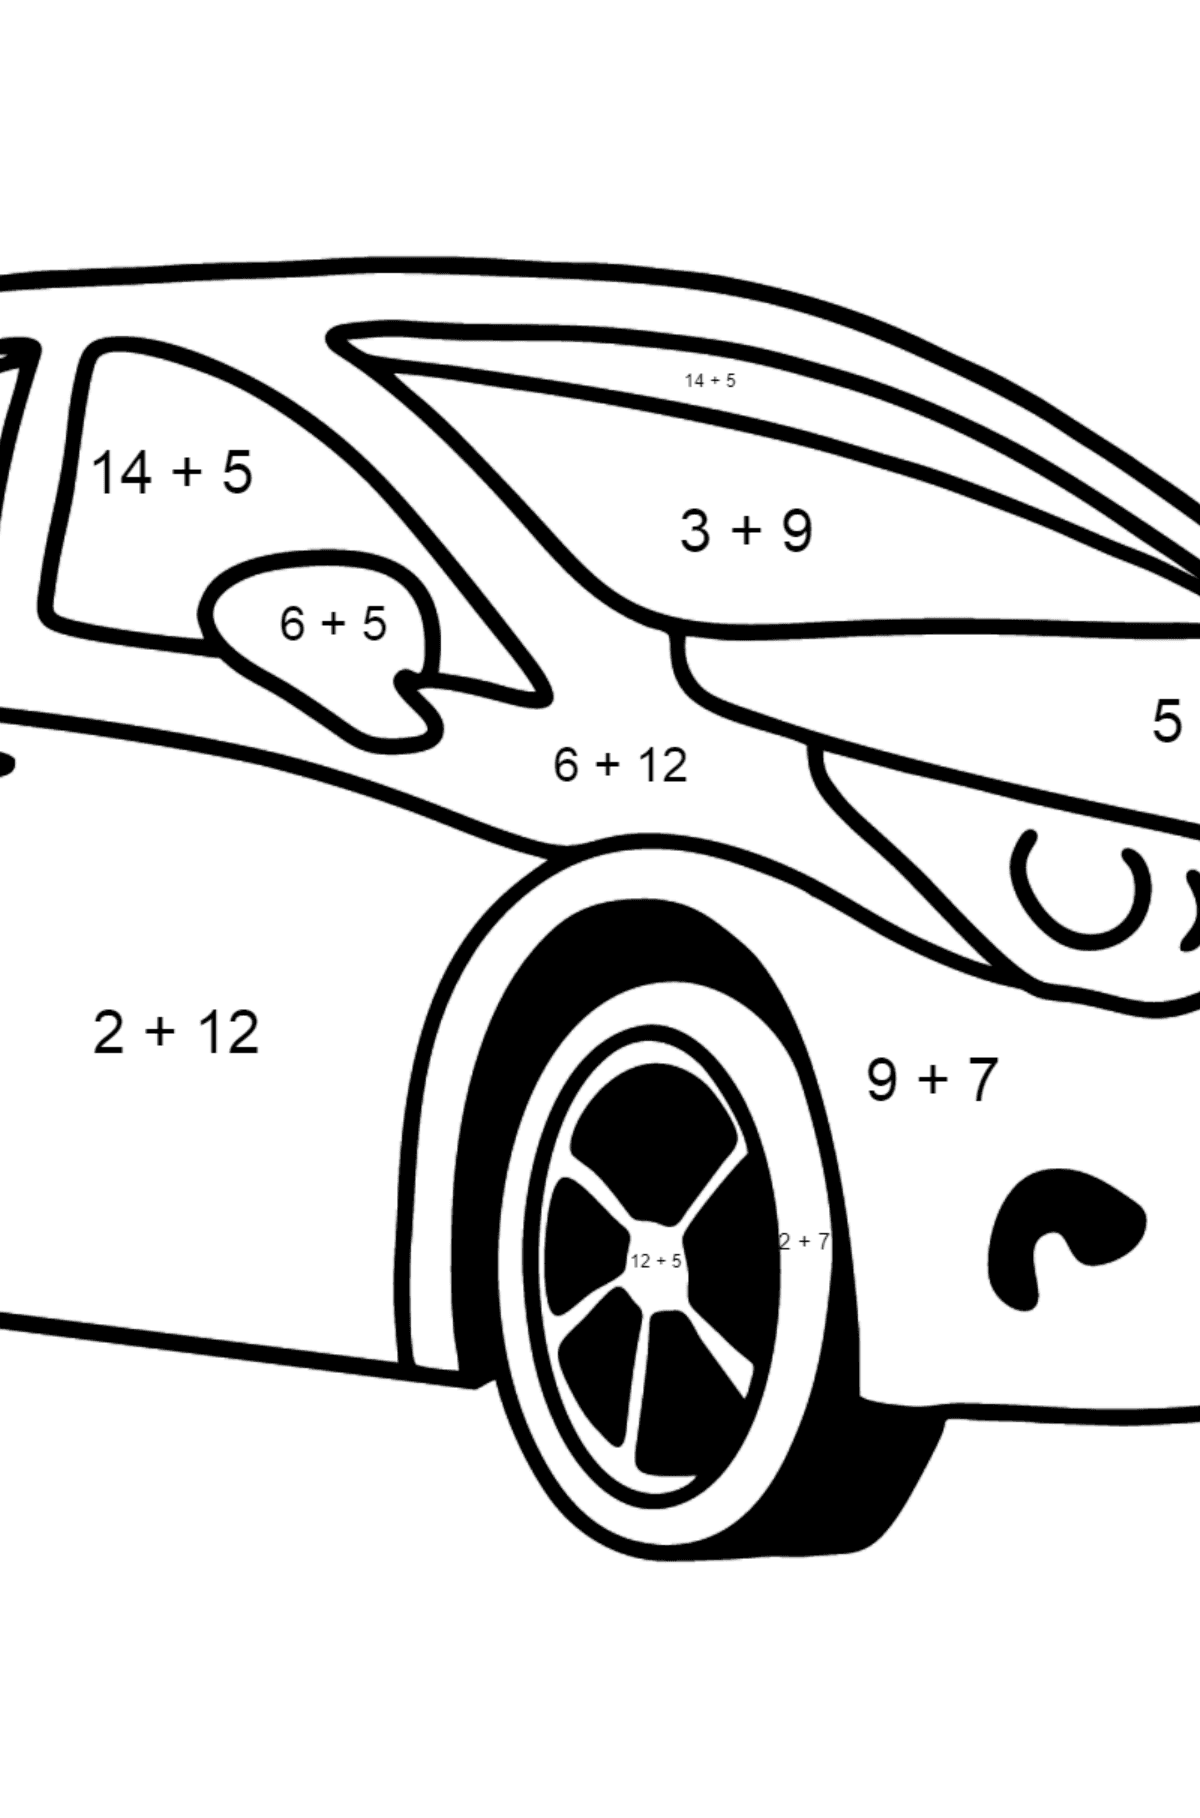 Mewarnai gambar mobil toyota avensis - Pewarnaan Matematika: Pertambahan untuk anak-anak